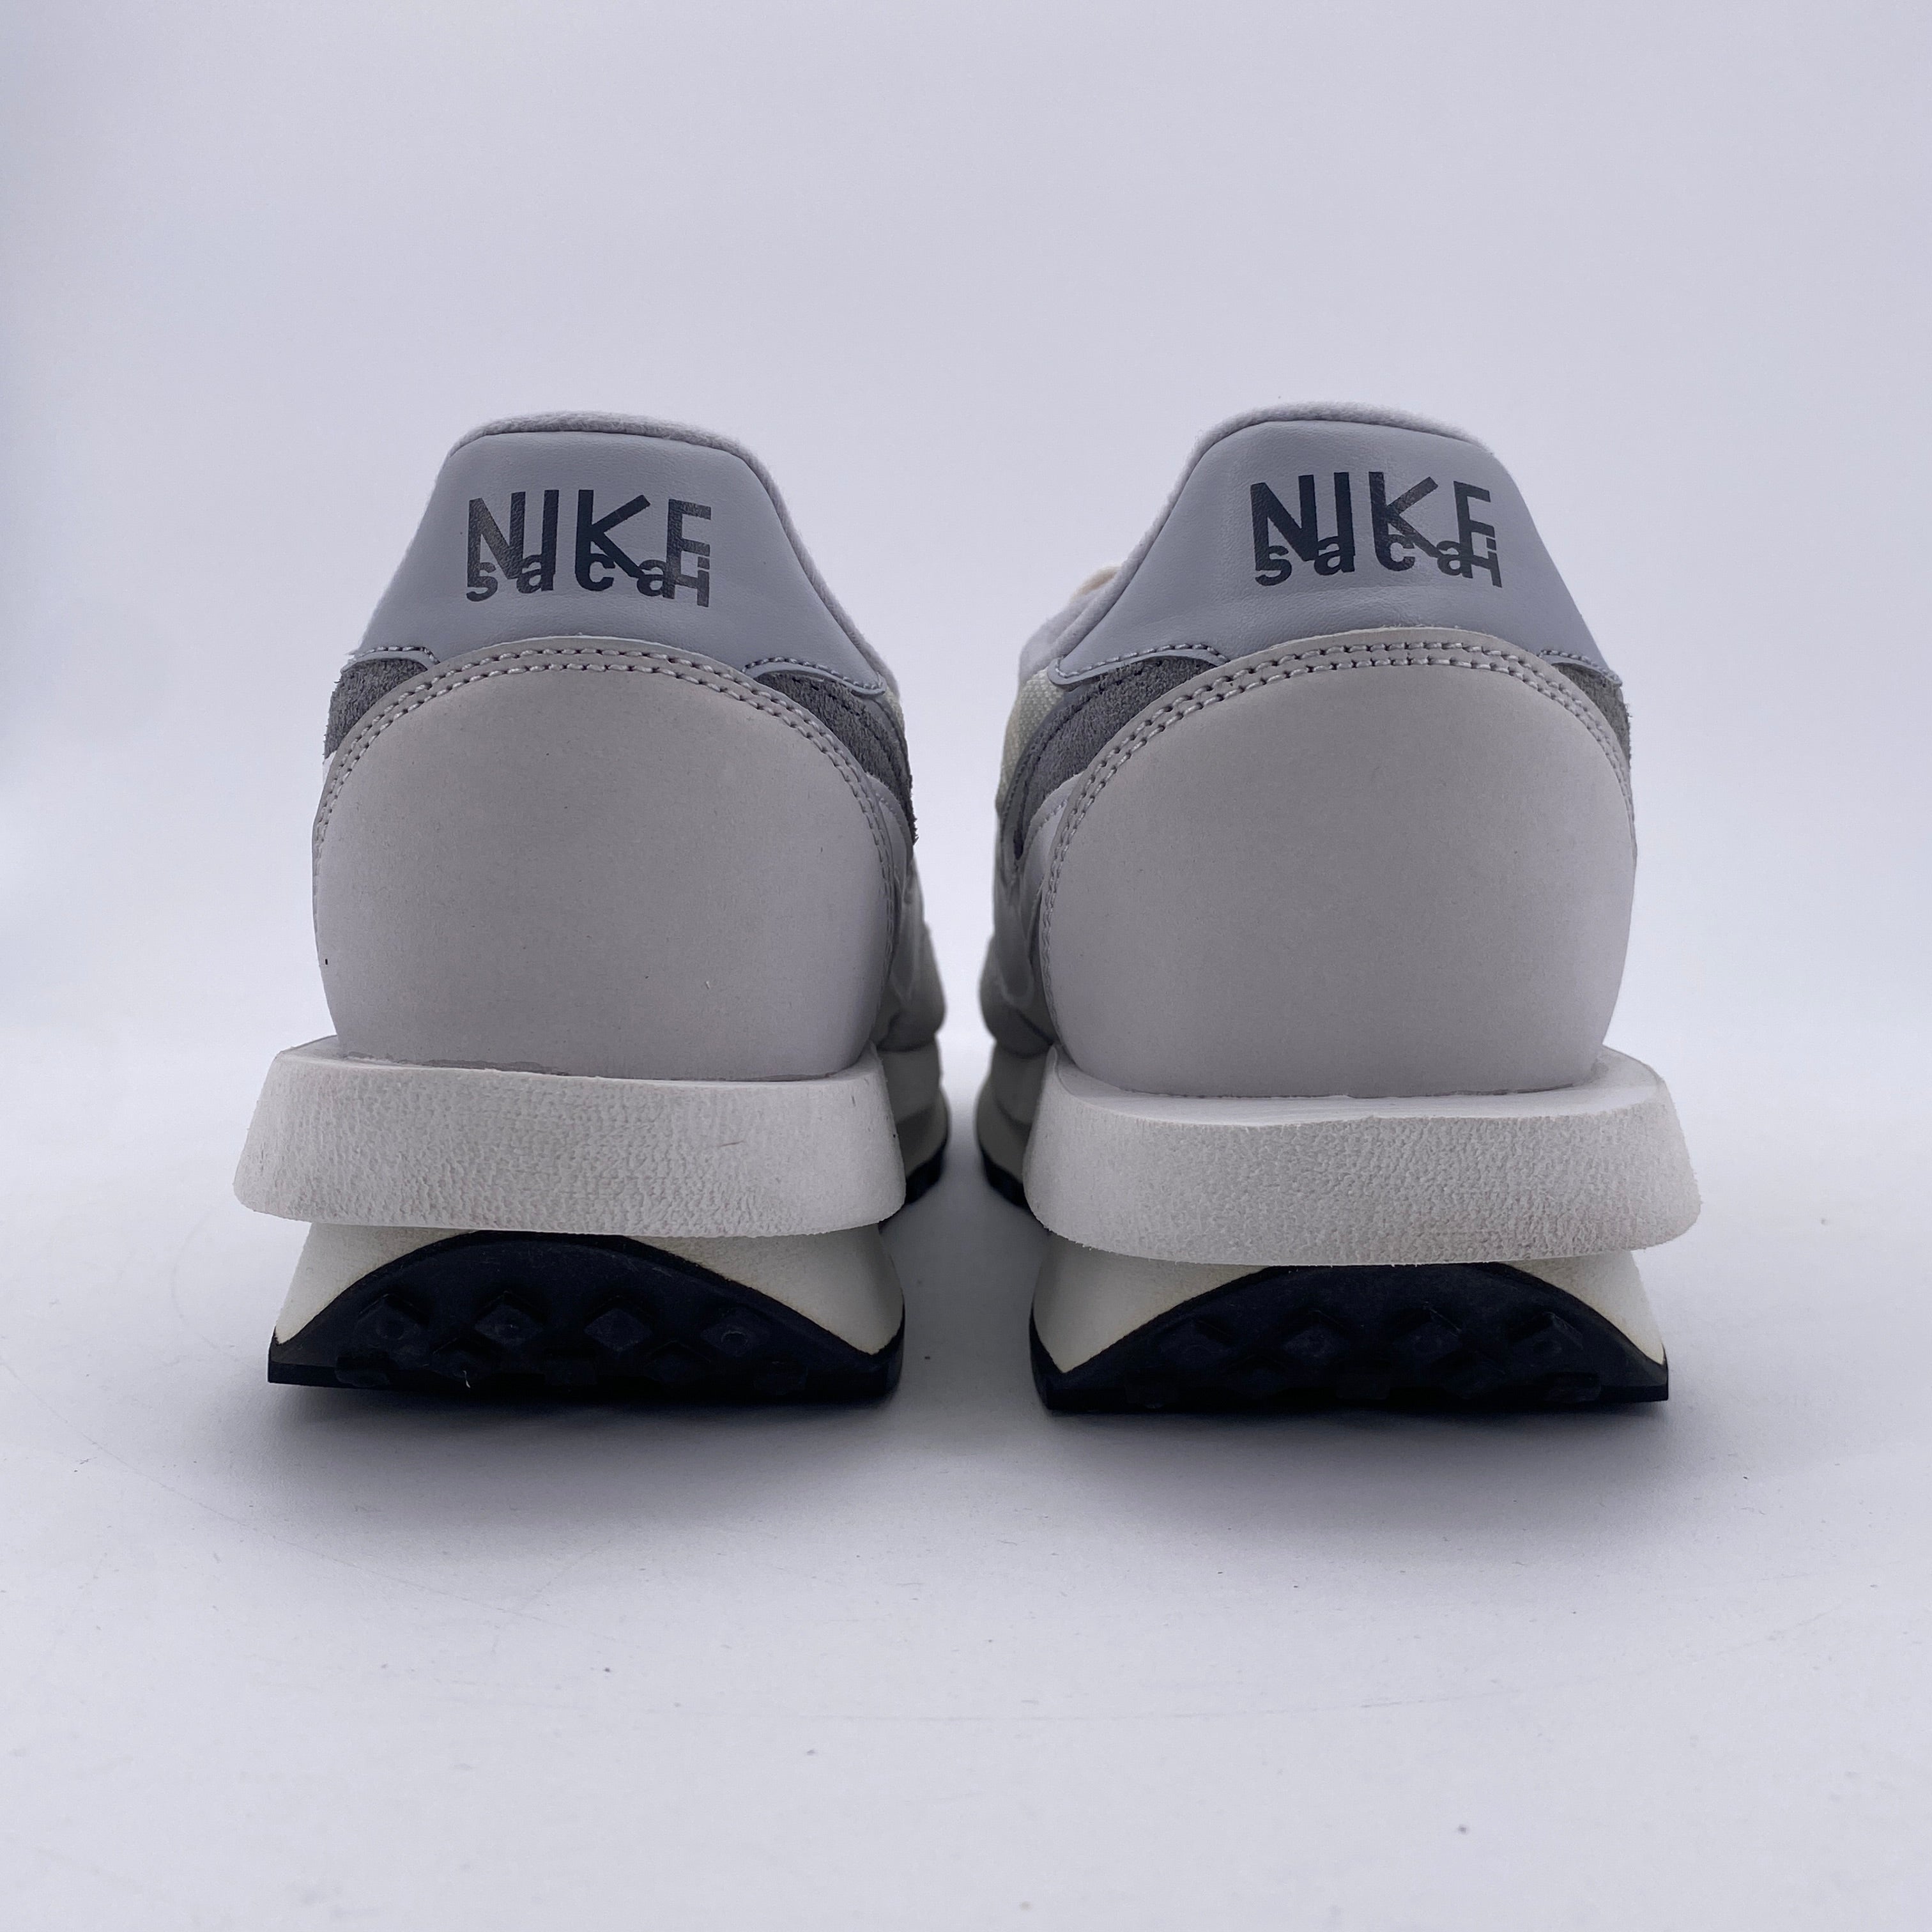 Nike LD WAFFLE / Sacai &quot;Summit White&quot; 2019 Used Size 10.5